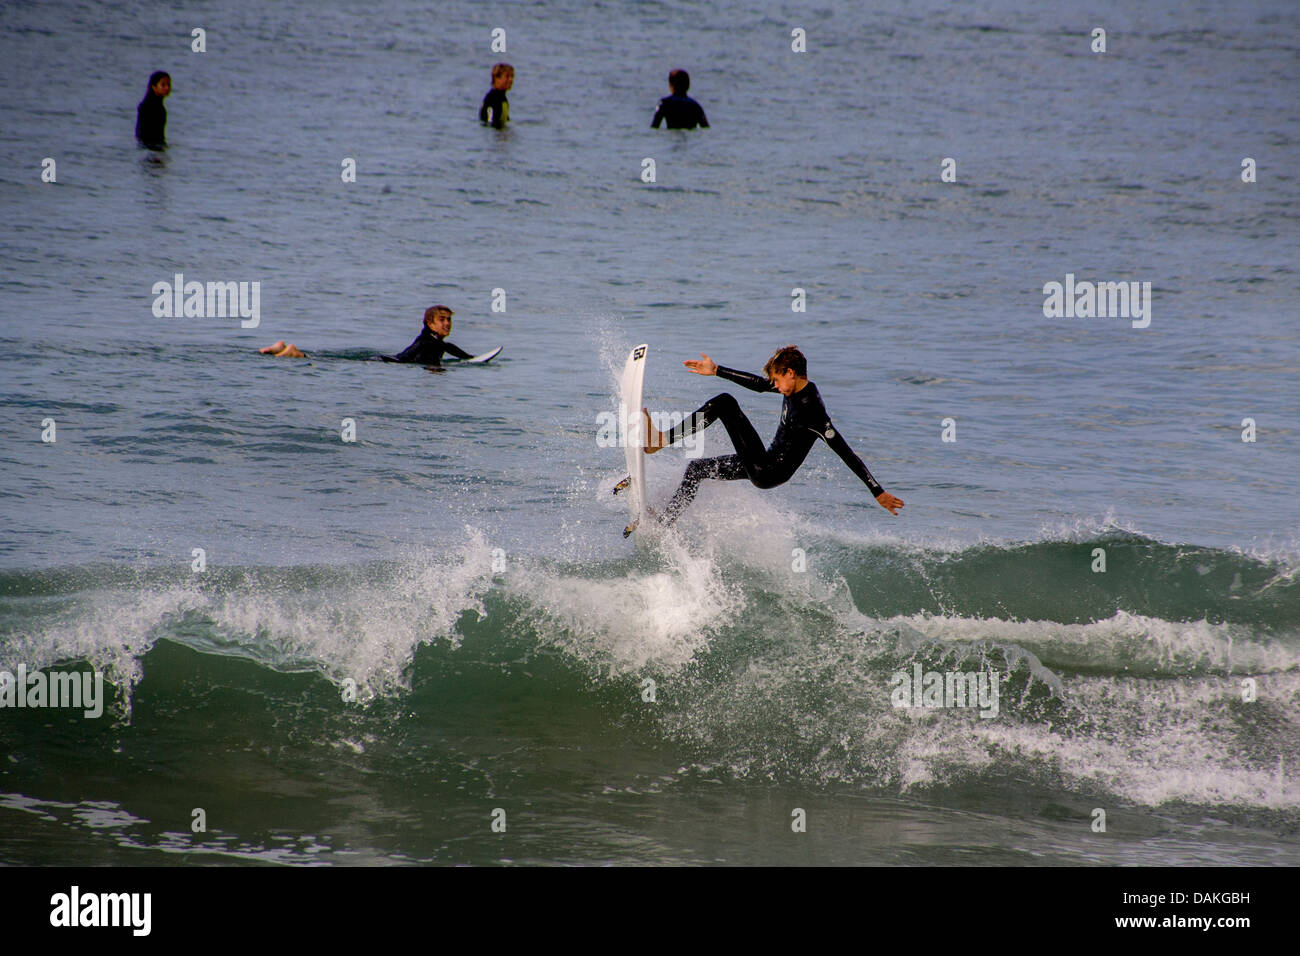 Teen jungen und Mädchen Mitglieder von San Clemente, CA, High School Surf Team Praxis in Neoprenanzüge im kalten Pazifik Wasser. Stockfoto